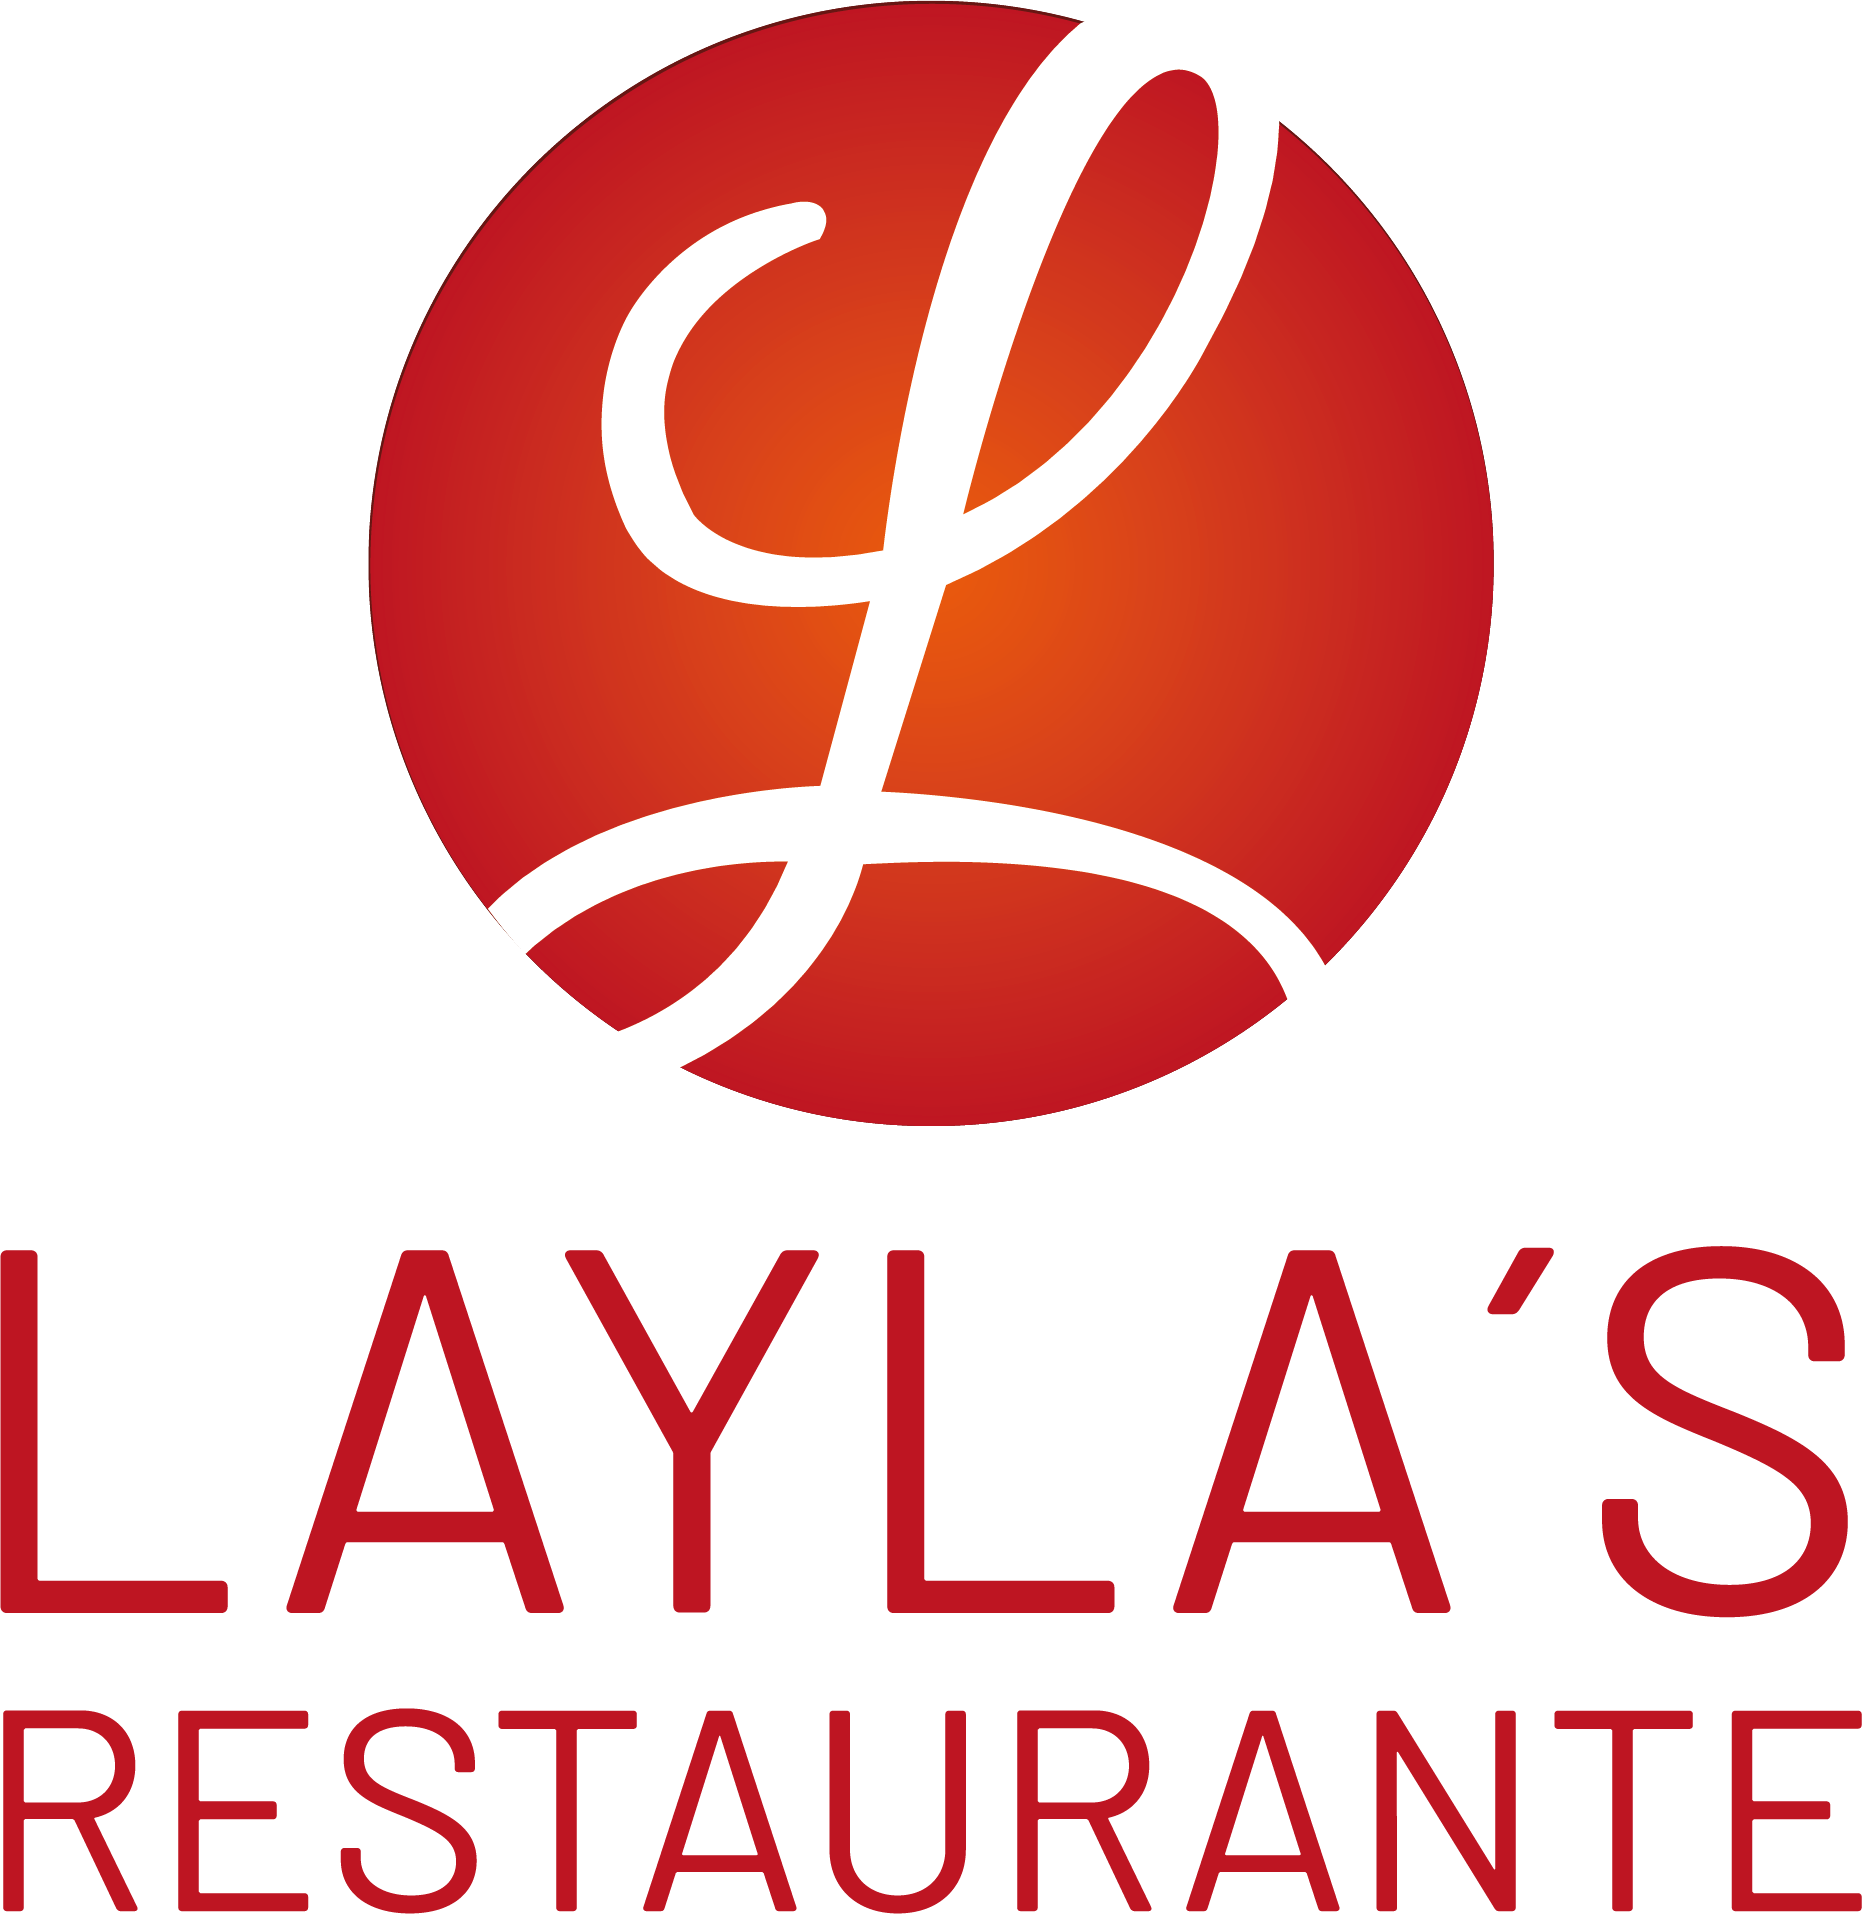 Laylas Restaurante